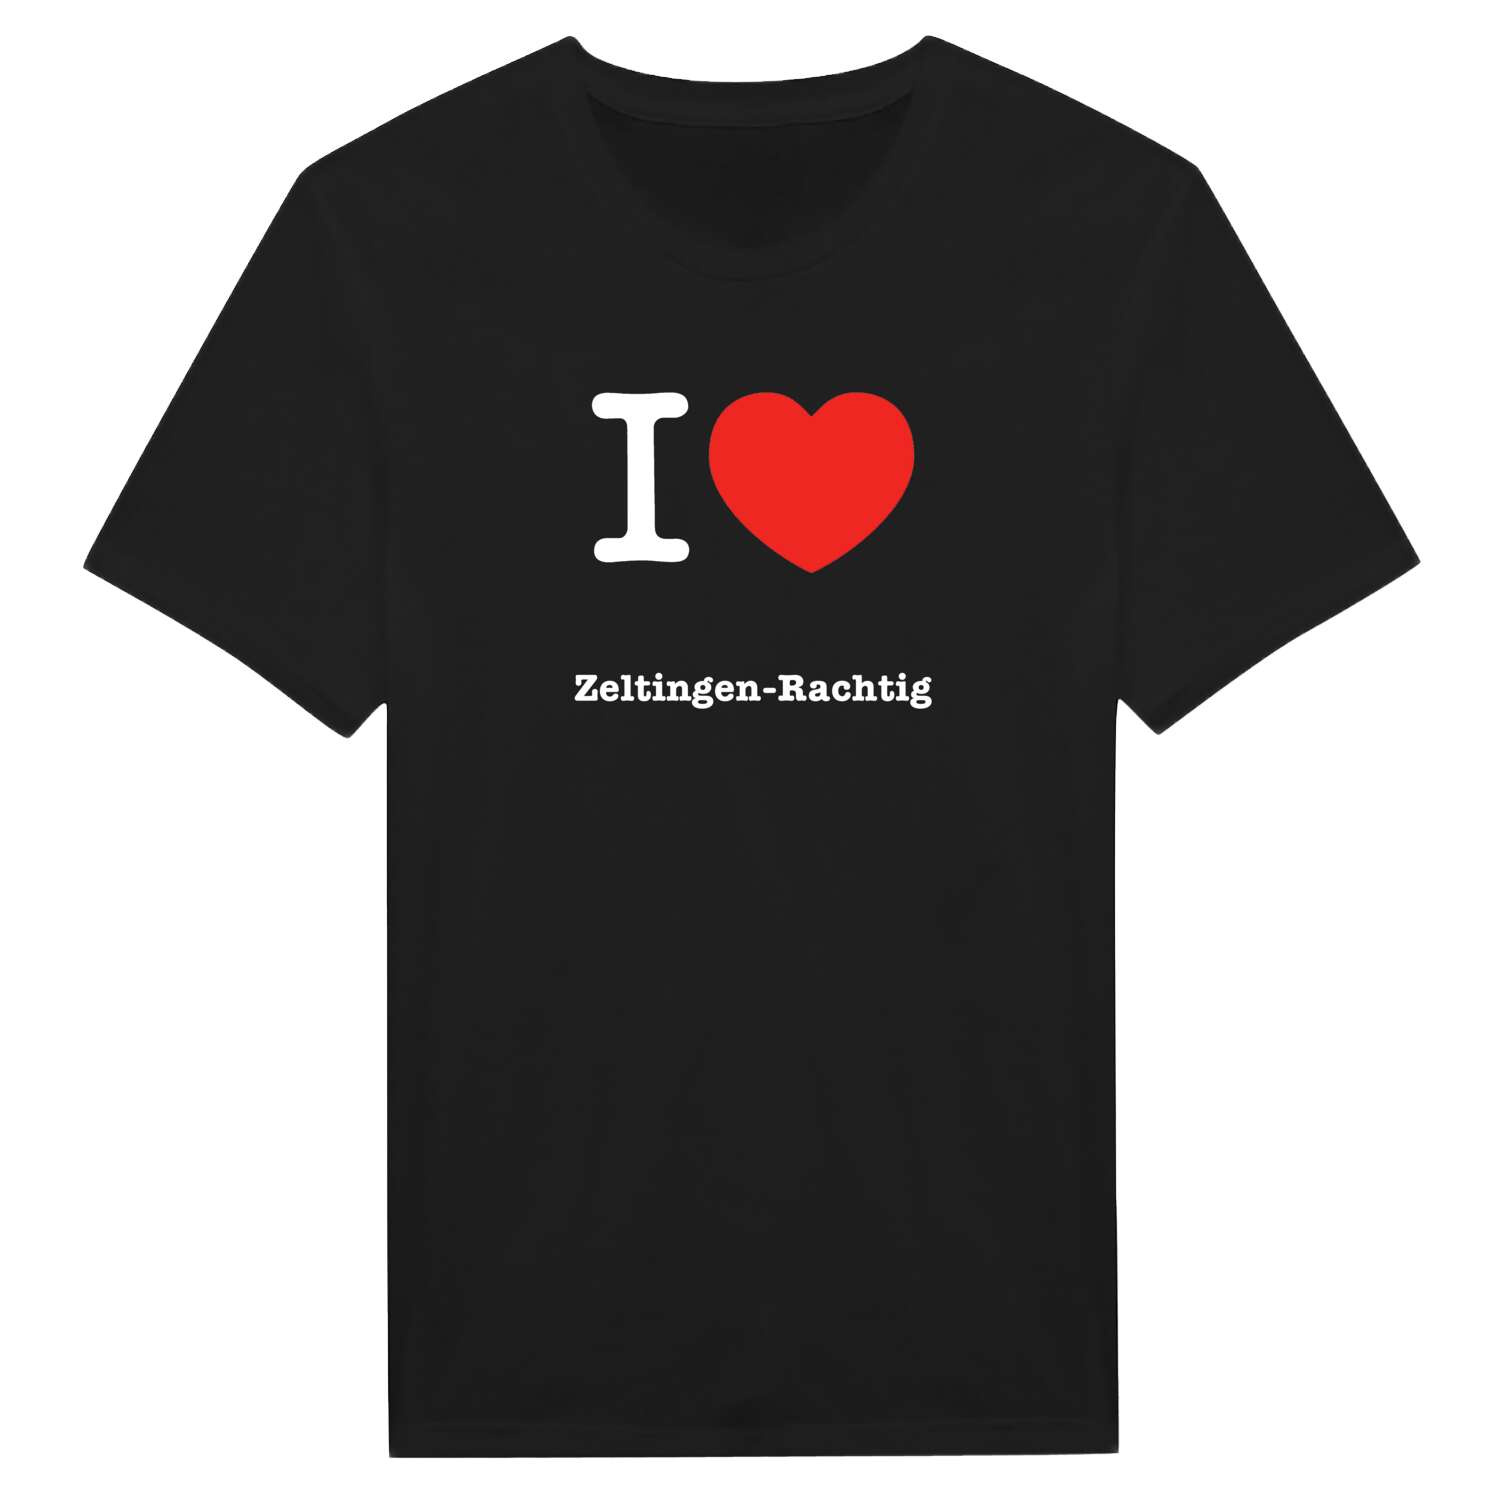 Zeltingen-Rachtig T-Shirt »I love«